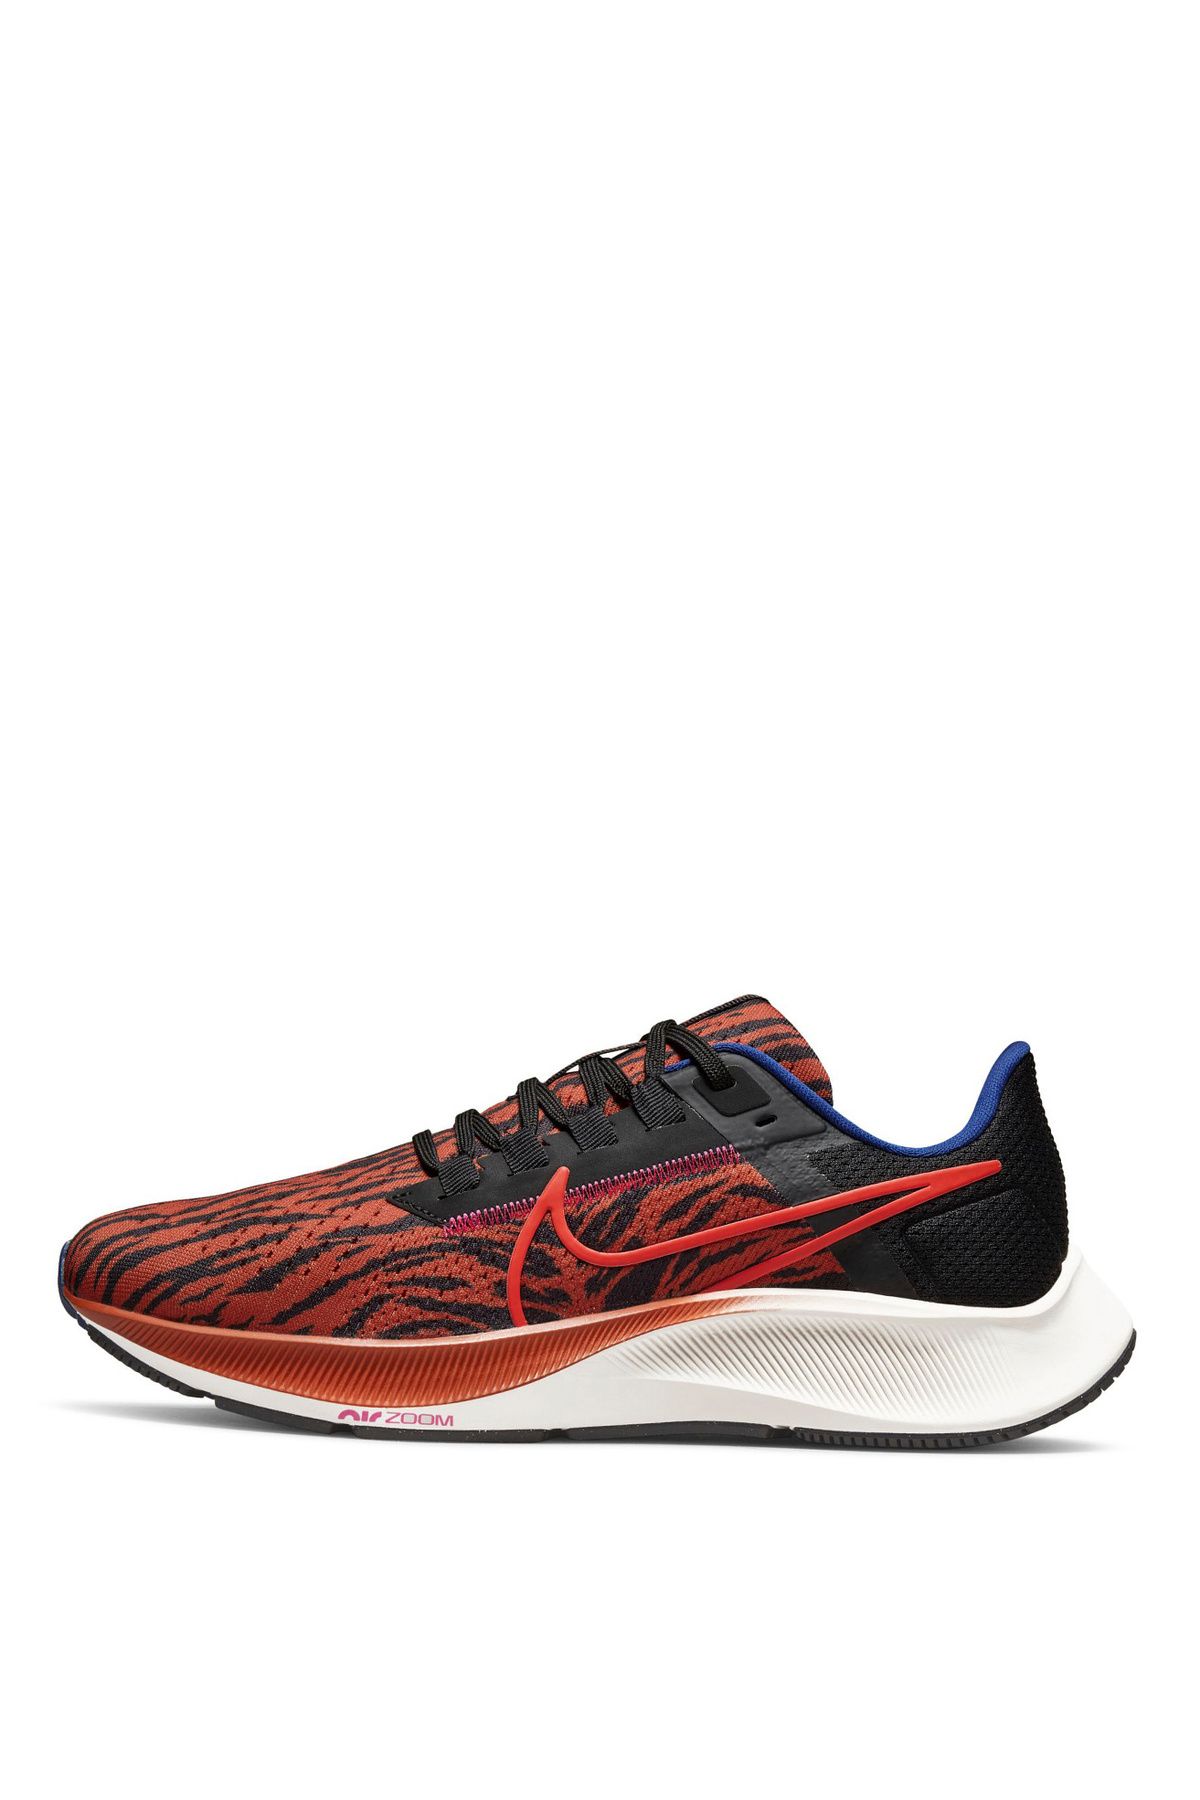 Nike Turuncu - Siyah Kadın Koşu Ayakkabısı DQ7650-800 WMNS NIKE AIR ZOOM PEGAS